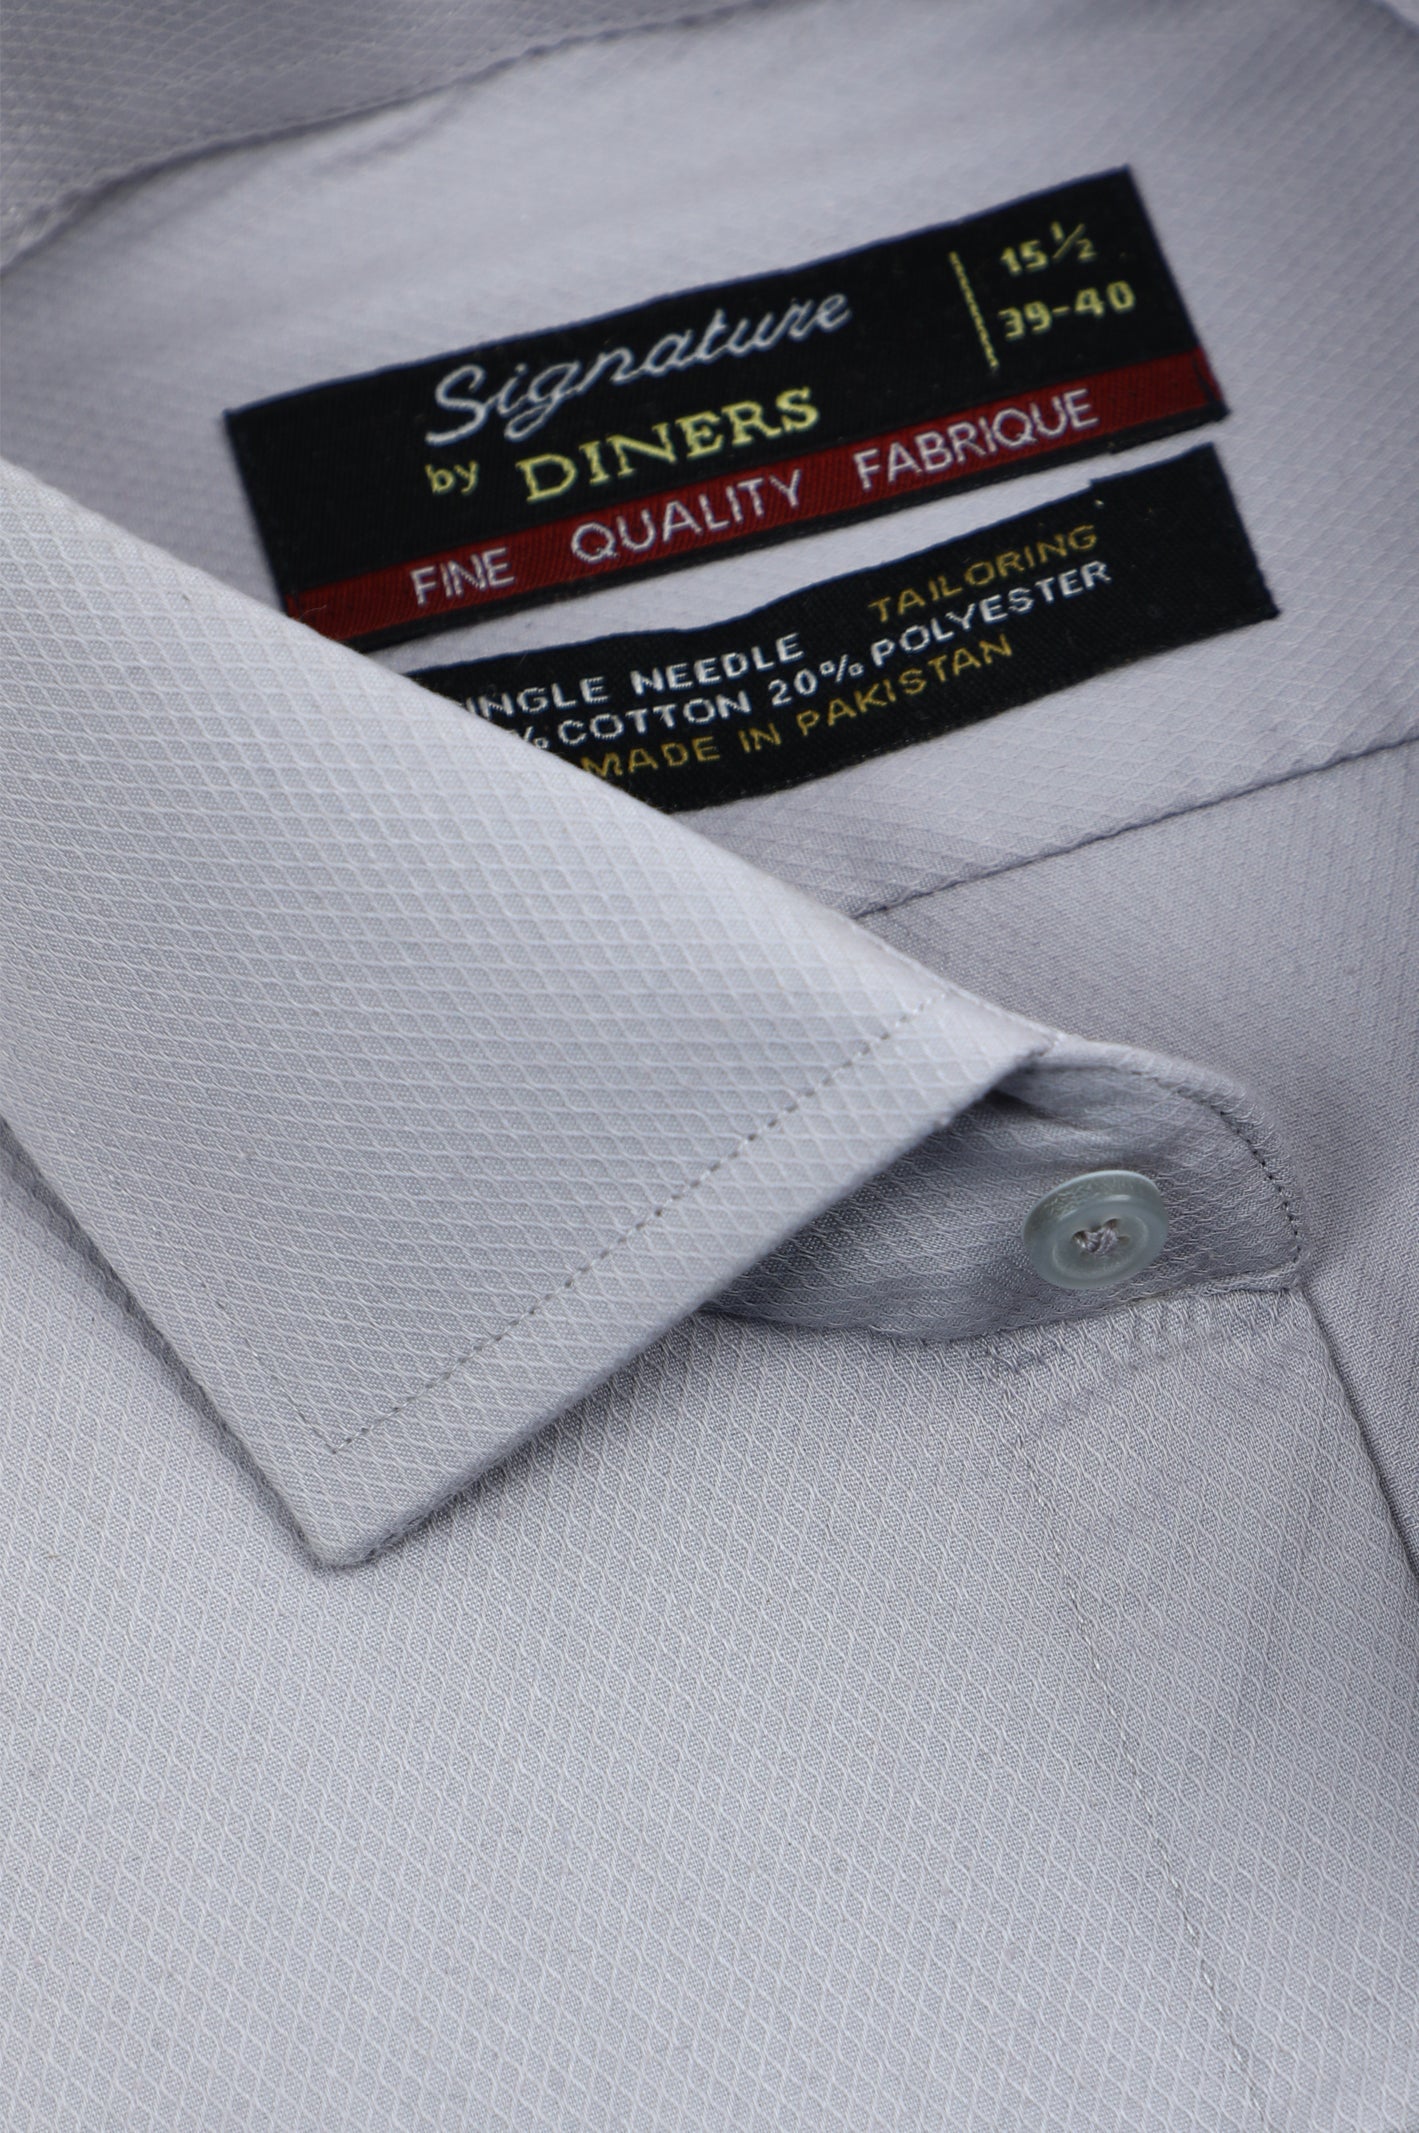 Formal Shirt for Men - Diners